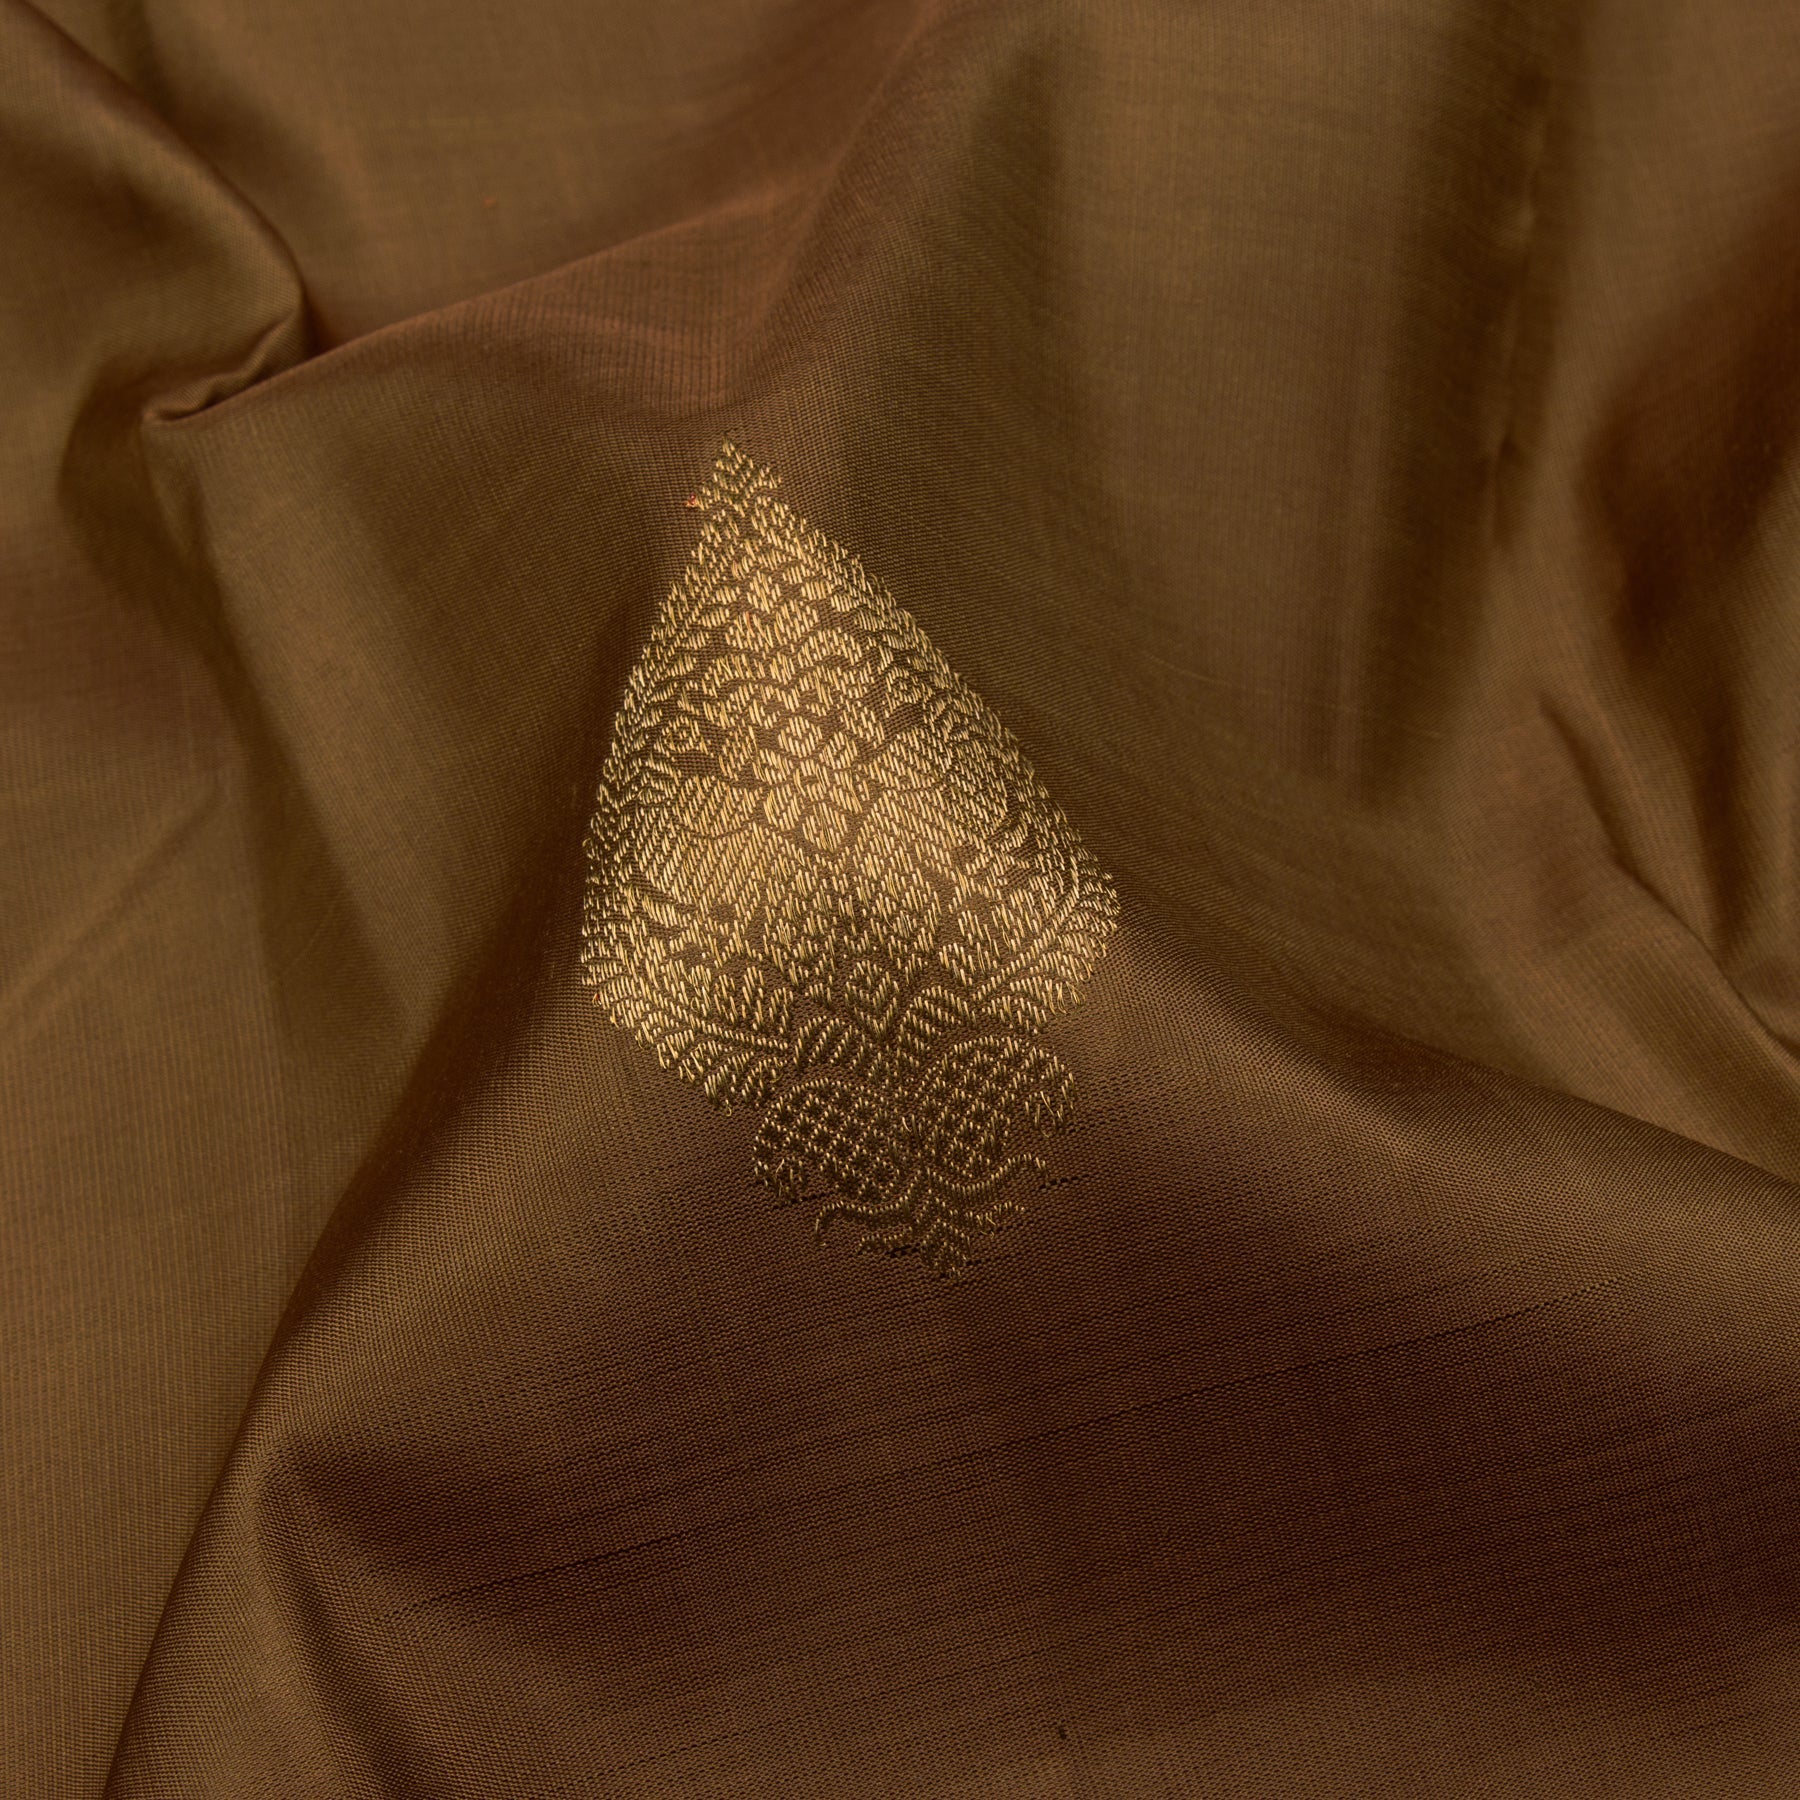 Kanakavalli Kanjivaram Silk Sari 23-595-HS001-01794 - Fabric View